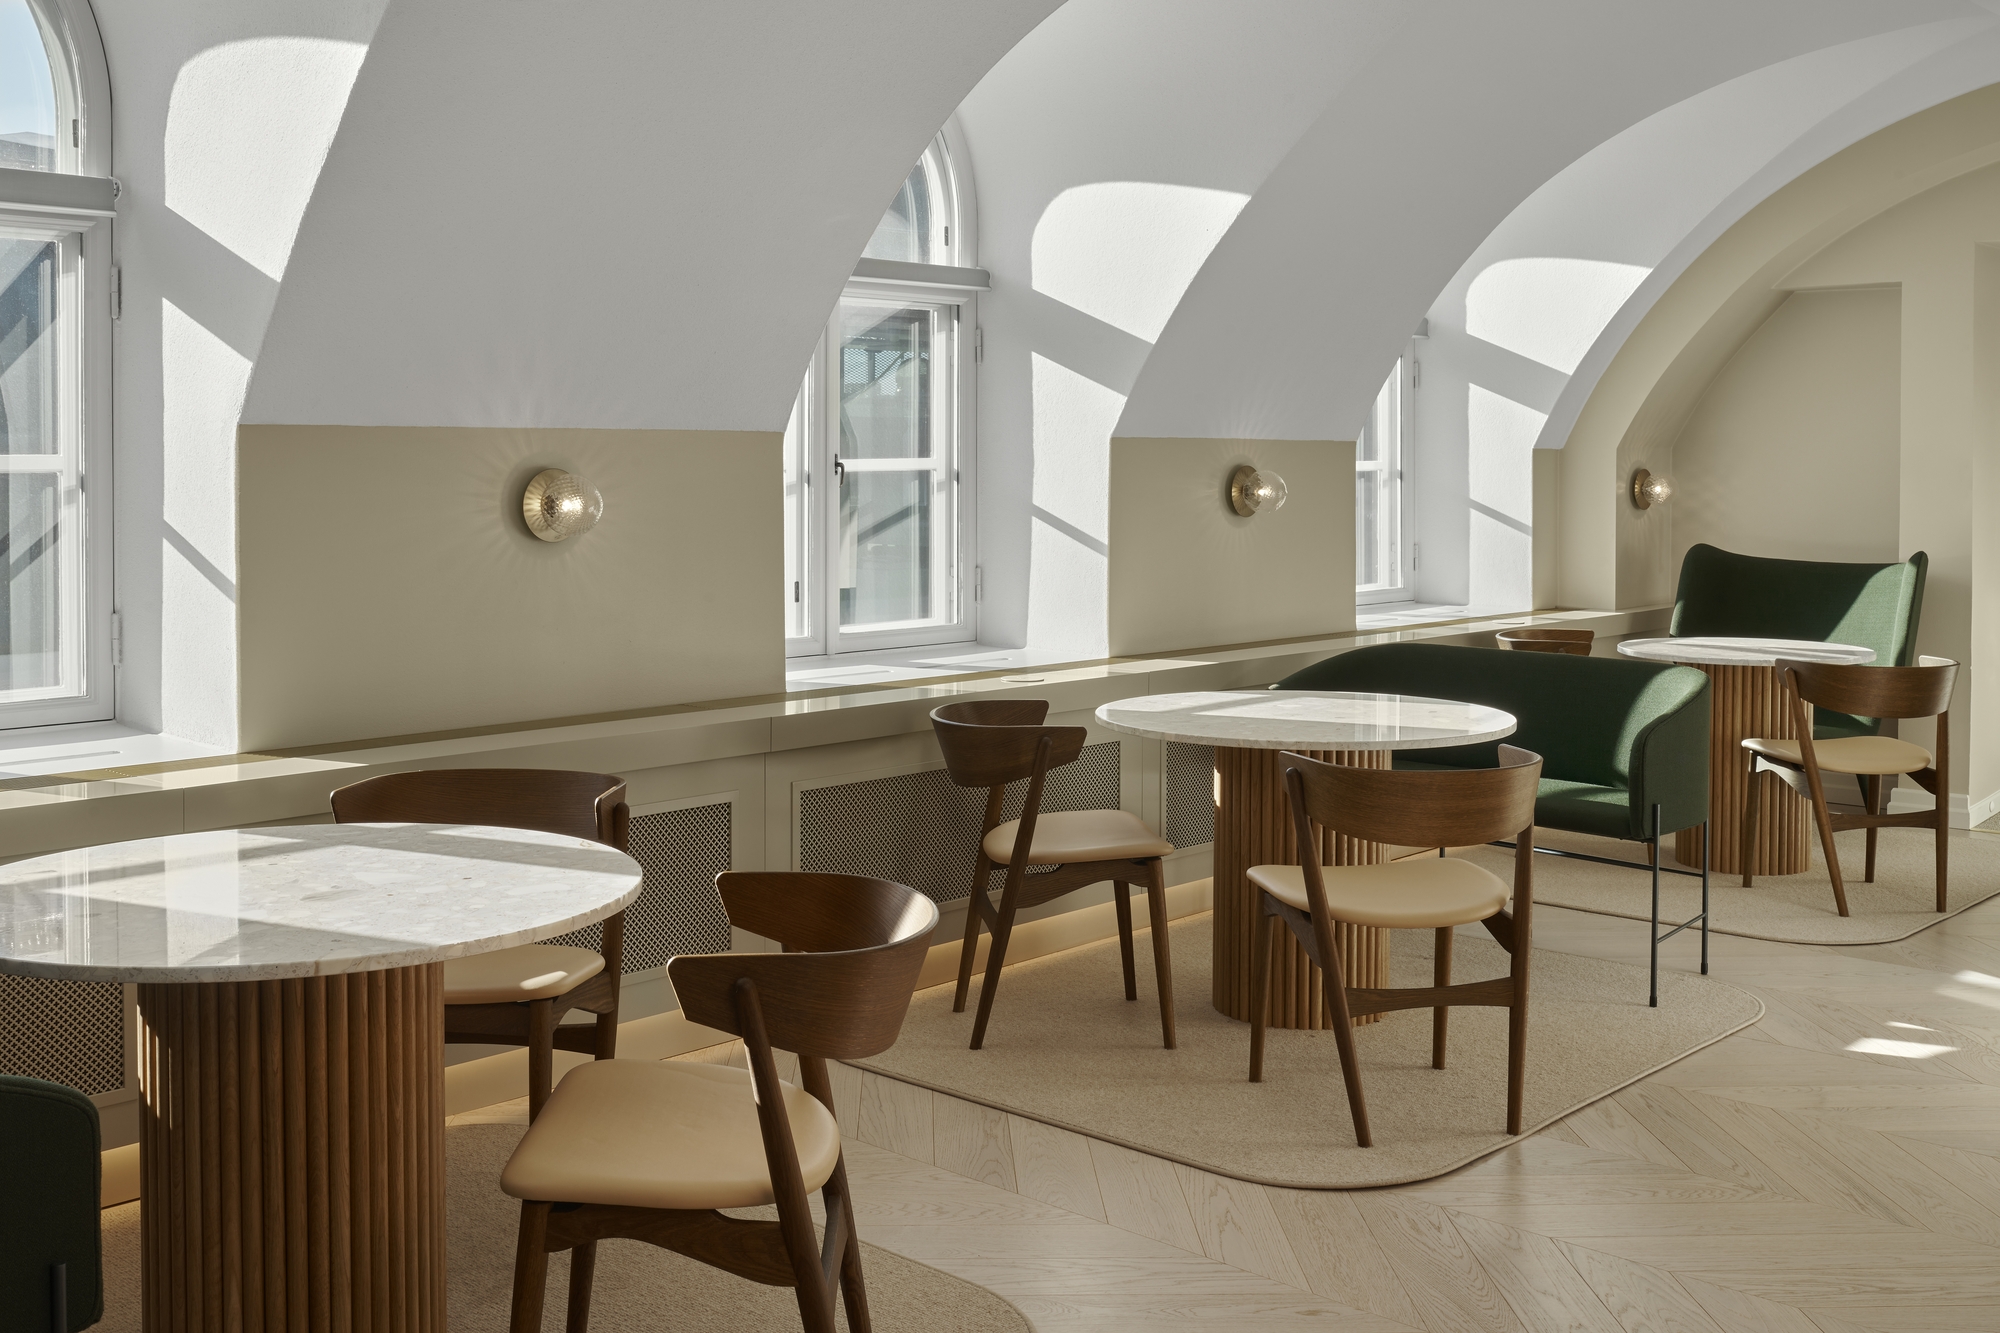 图片[3]|Ilmatar办公室-赫尔辛基|ART-Arrakis | 建筑室内设计的创新与灵感